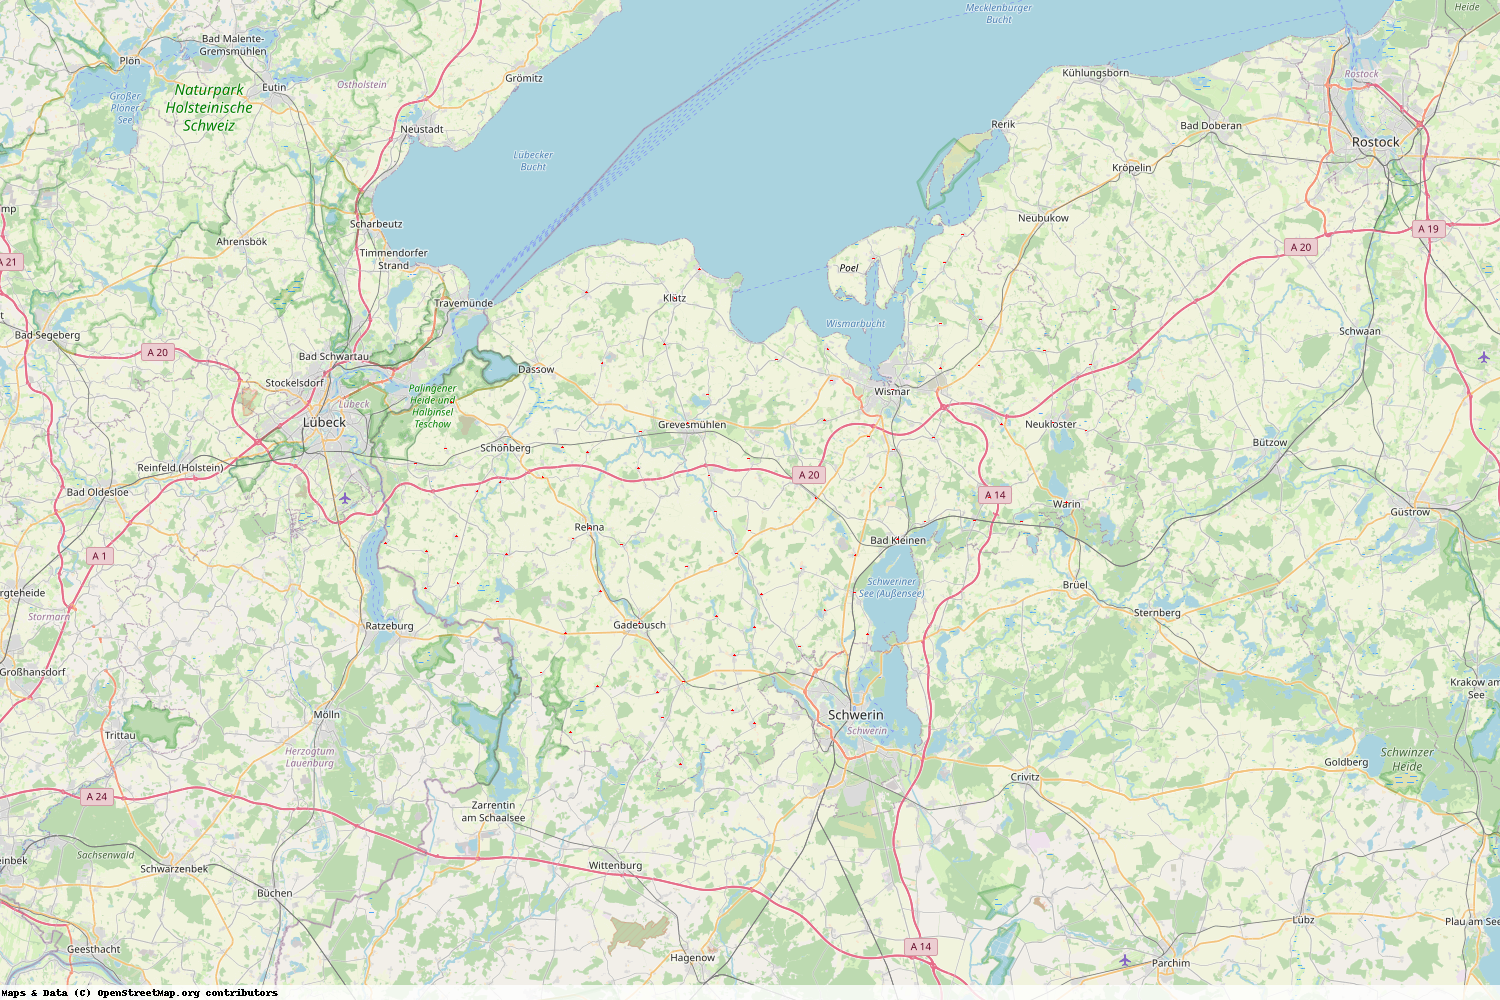 Ist gerade Stromausfall in Mecklenburg-Vorpommern - Nordwestmecklenburg?